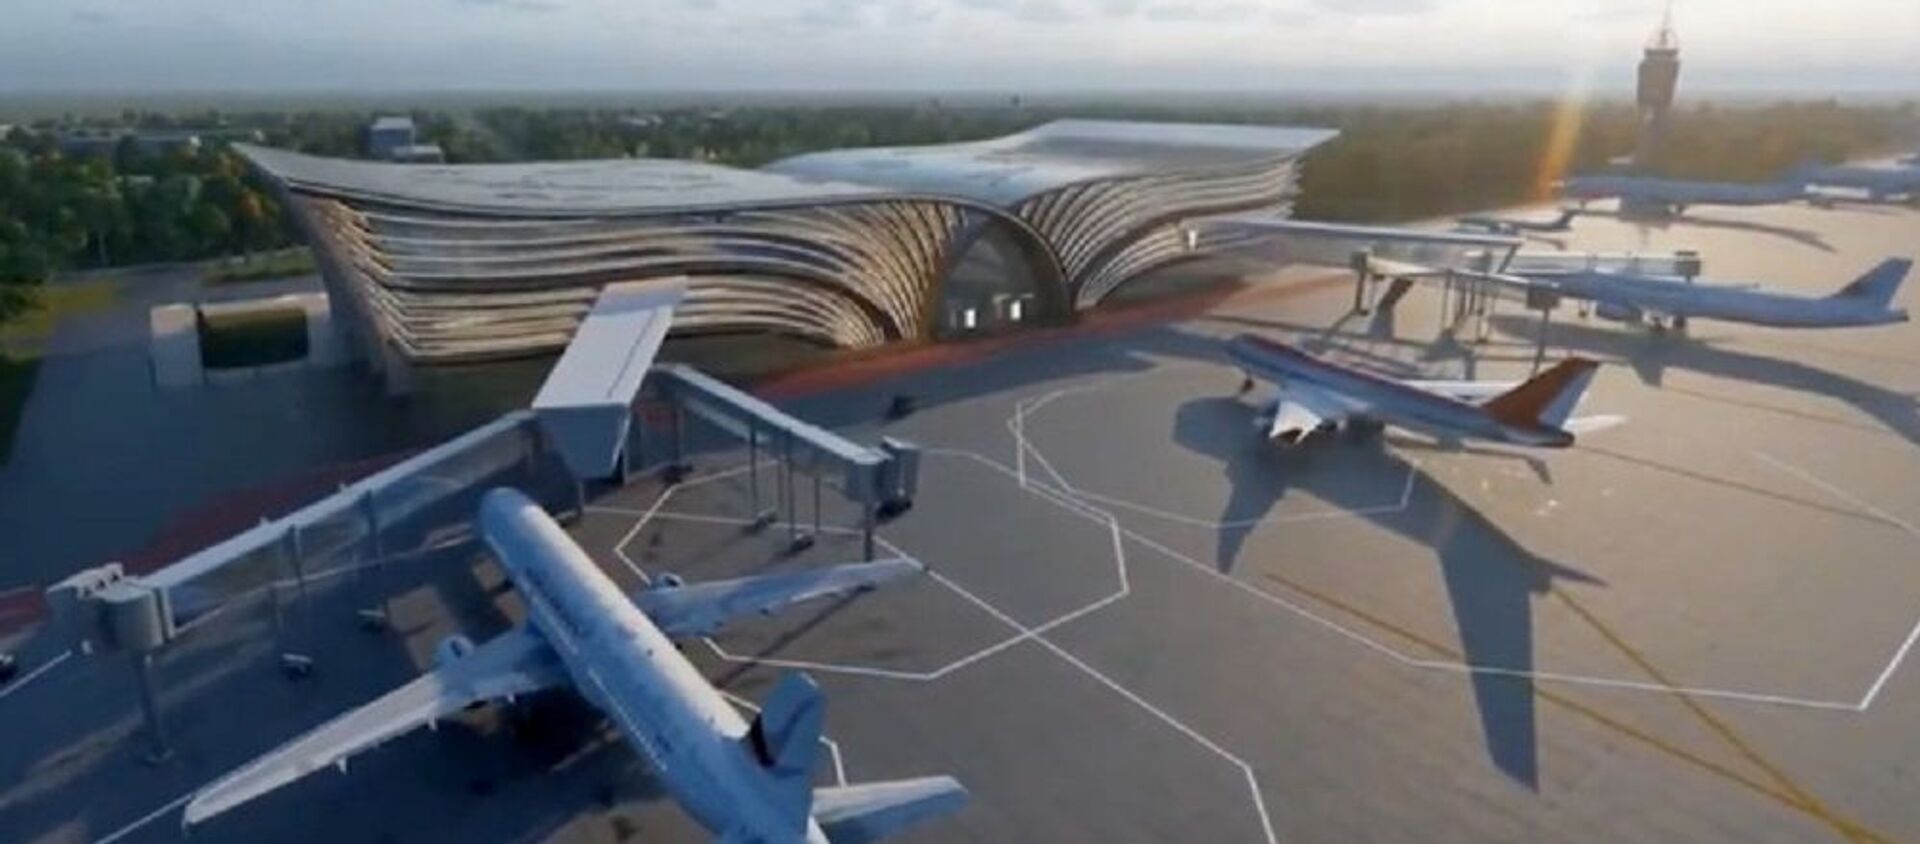 Как будет выглядеть новый терминал аэропорта Самарканда - фото - Sputnik Ўзбекистон, 1920, 05.12.2019